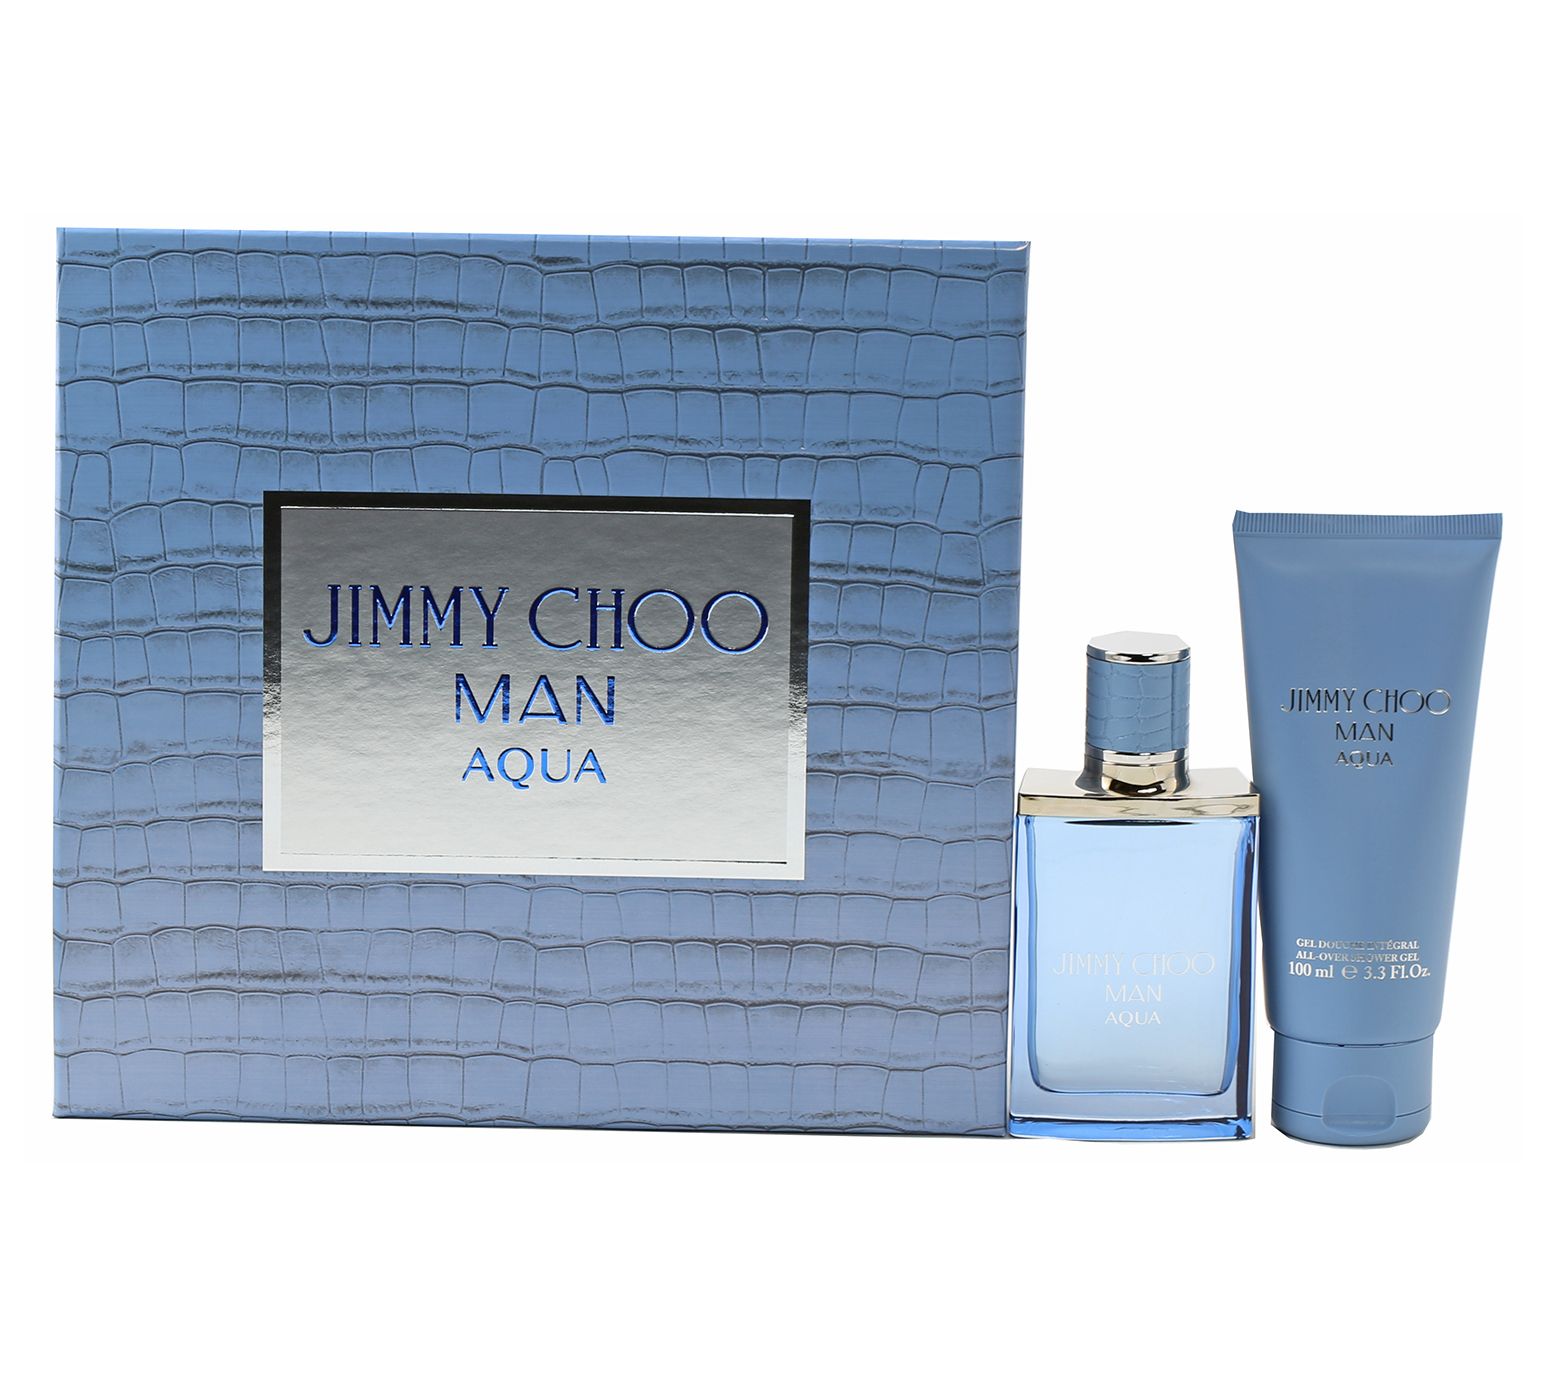 Jimmy Choo Aqua Man EDT & Shower Gel Gift Set - QVC.com